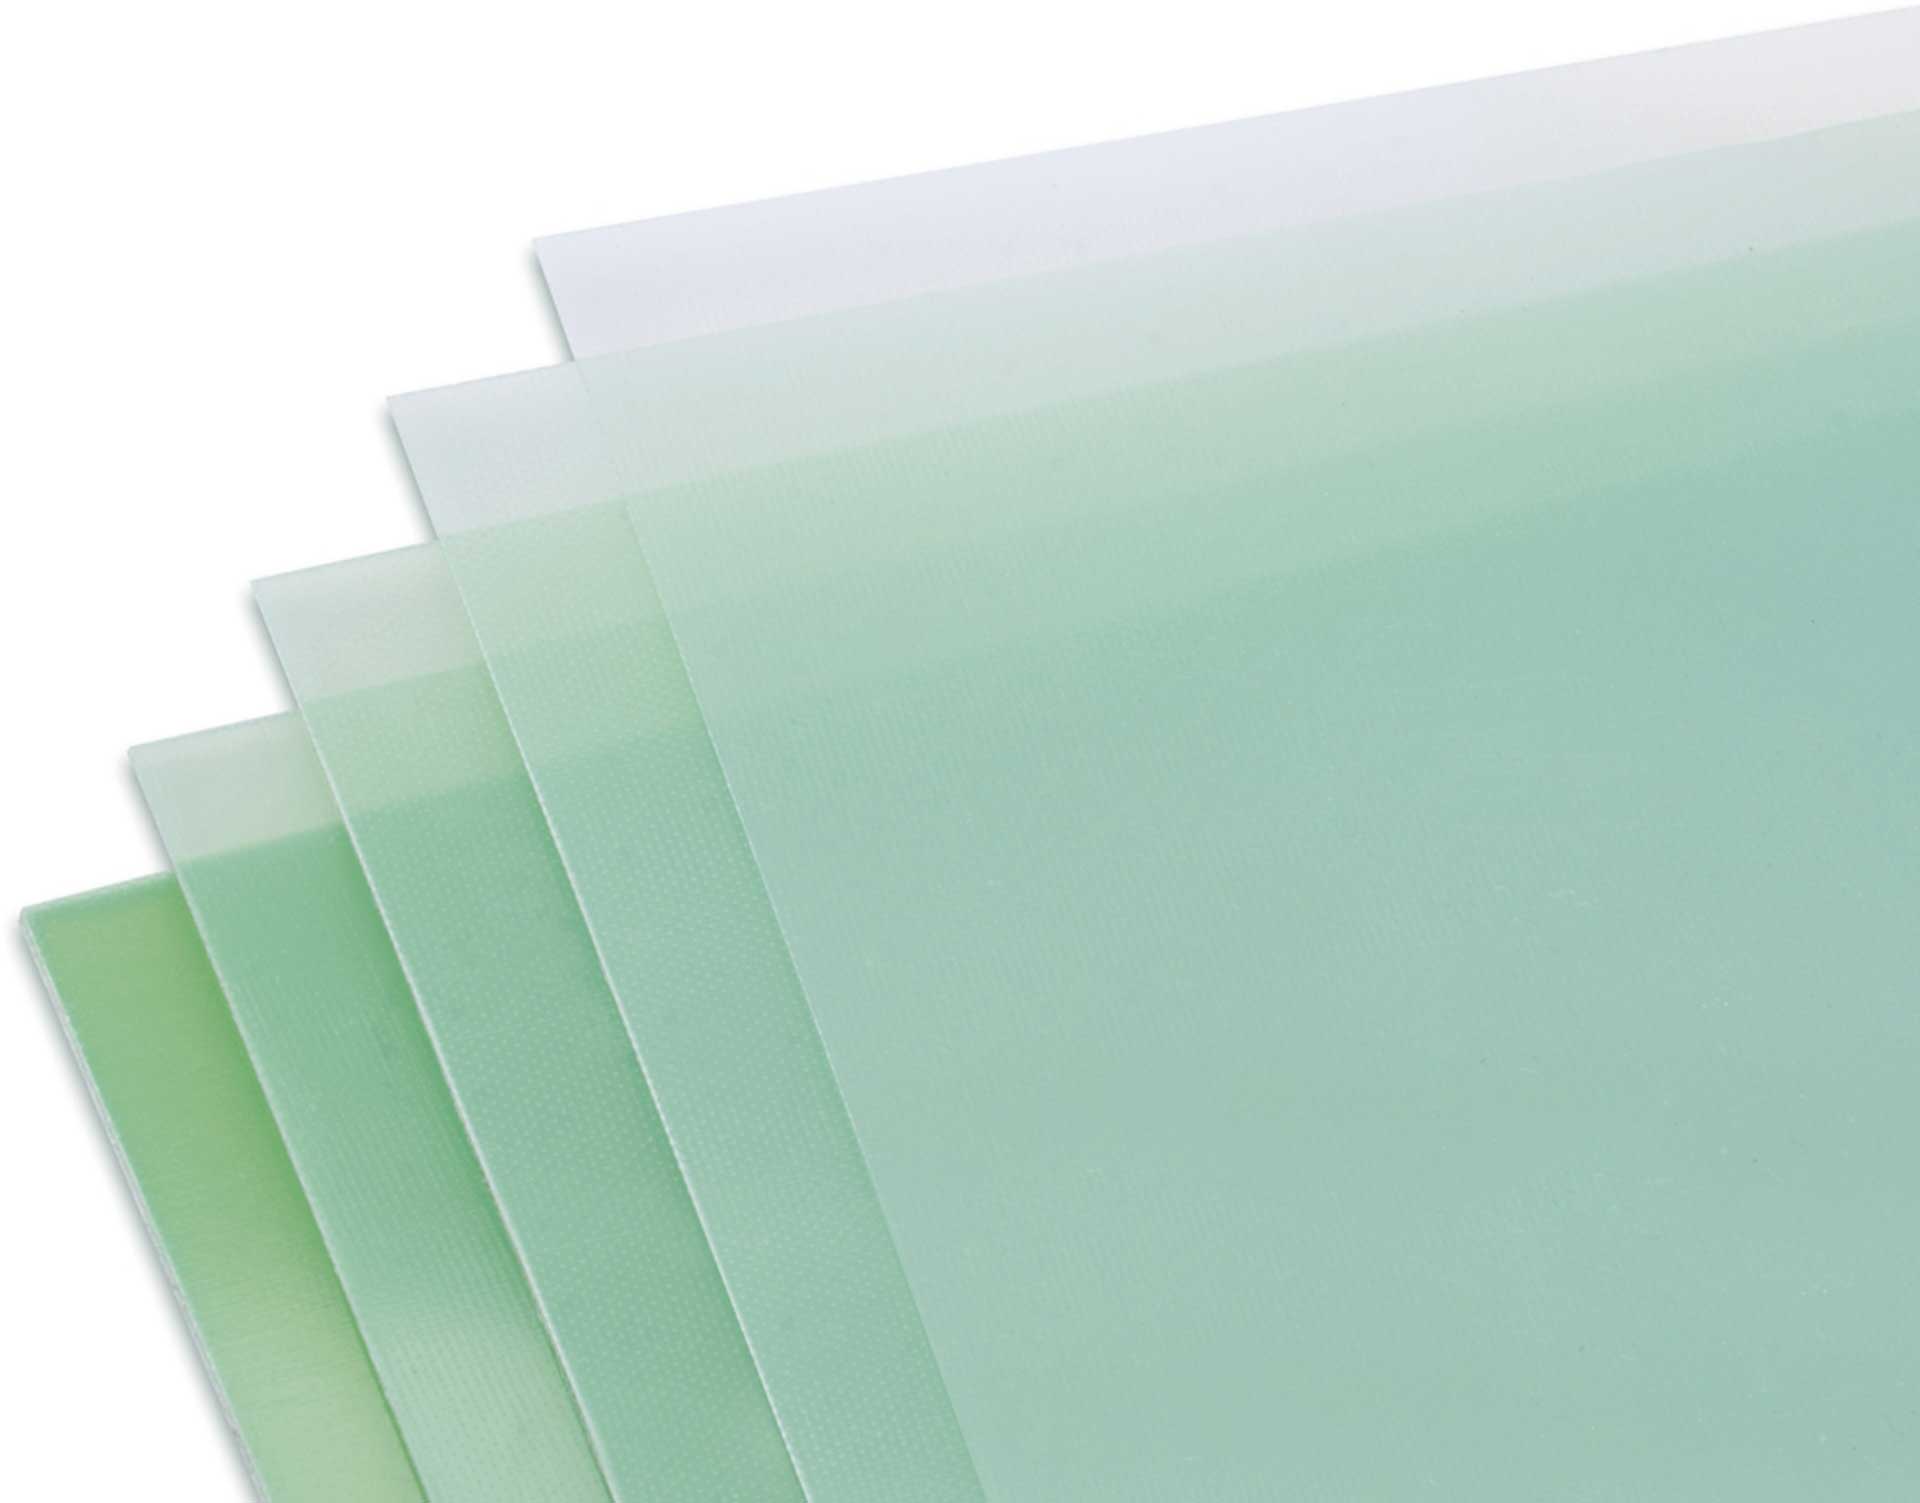 Modellbau Lindinger GFK-Platte 0,2x610x340mm matt, grünlich transparent